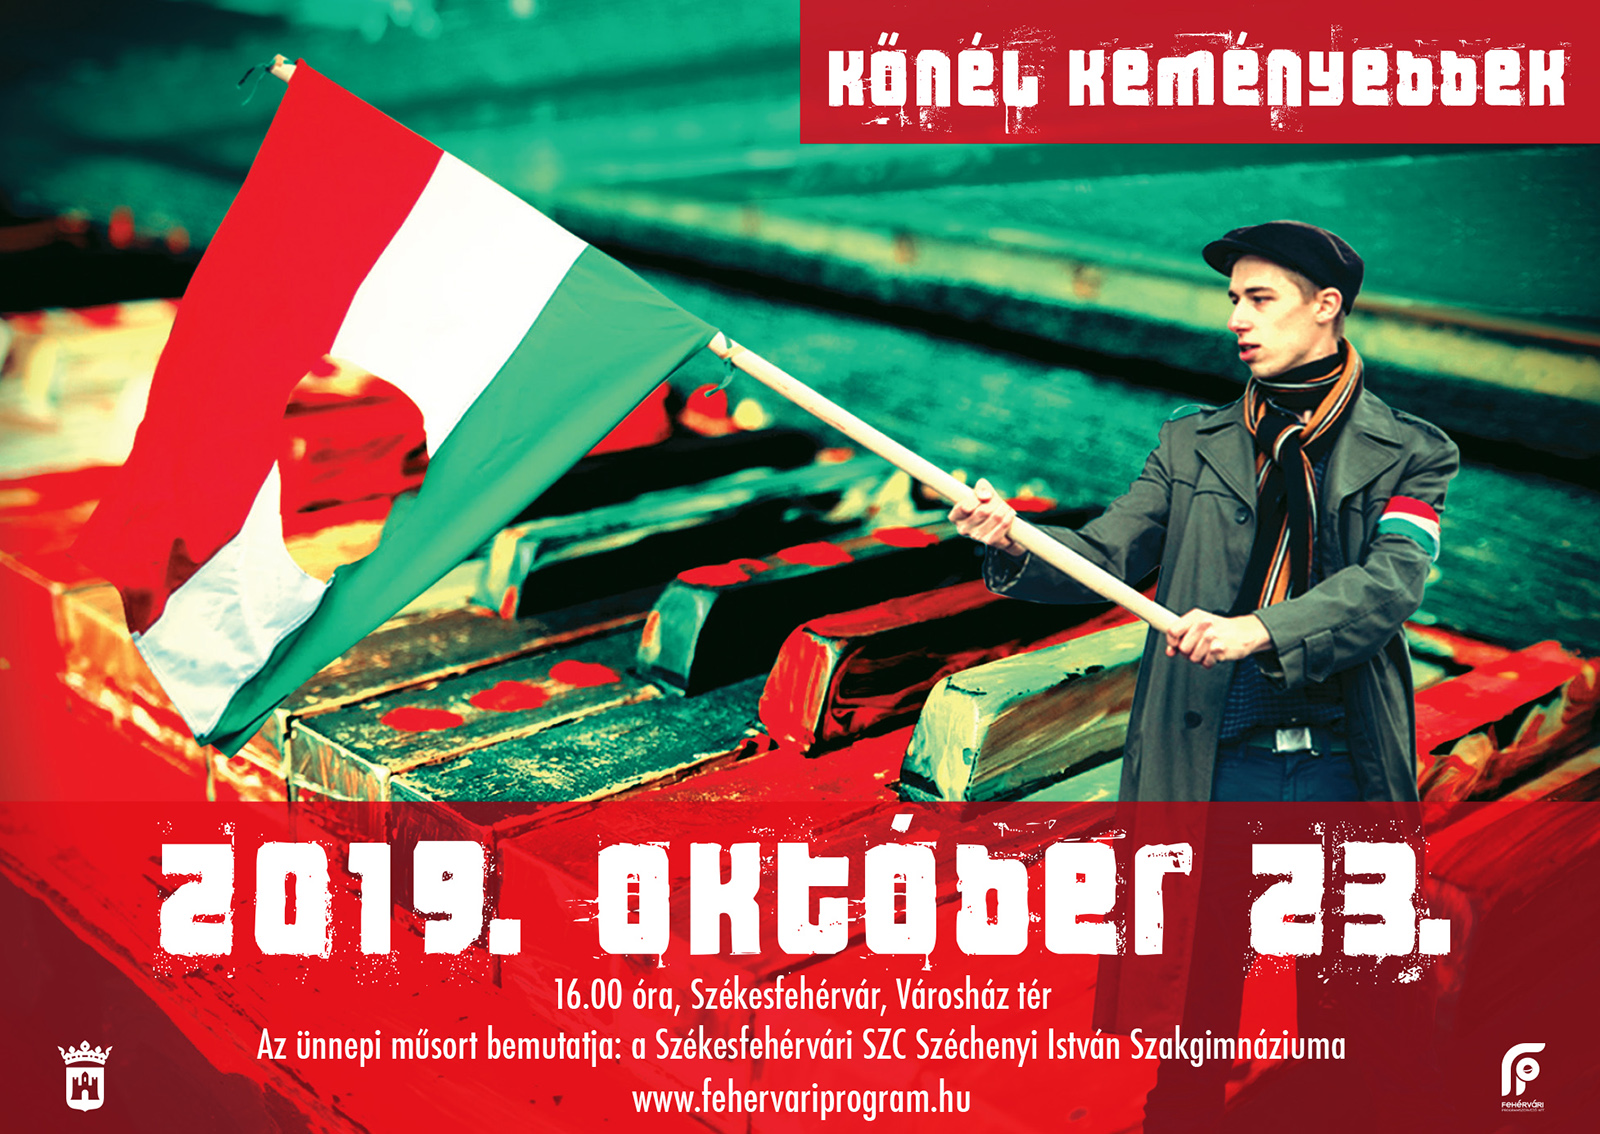 Kőnél keményebbek - idén a Széchenyi diákjai adnak ünnepi műsort október 23-án